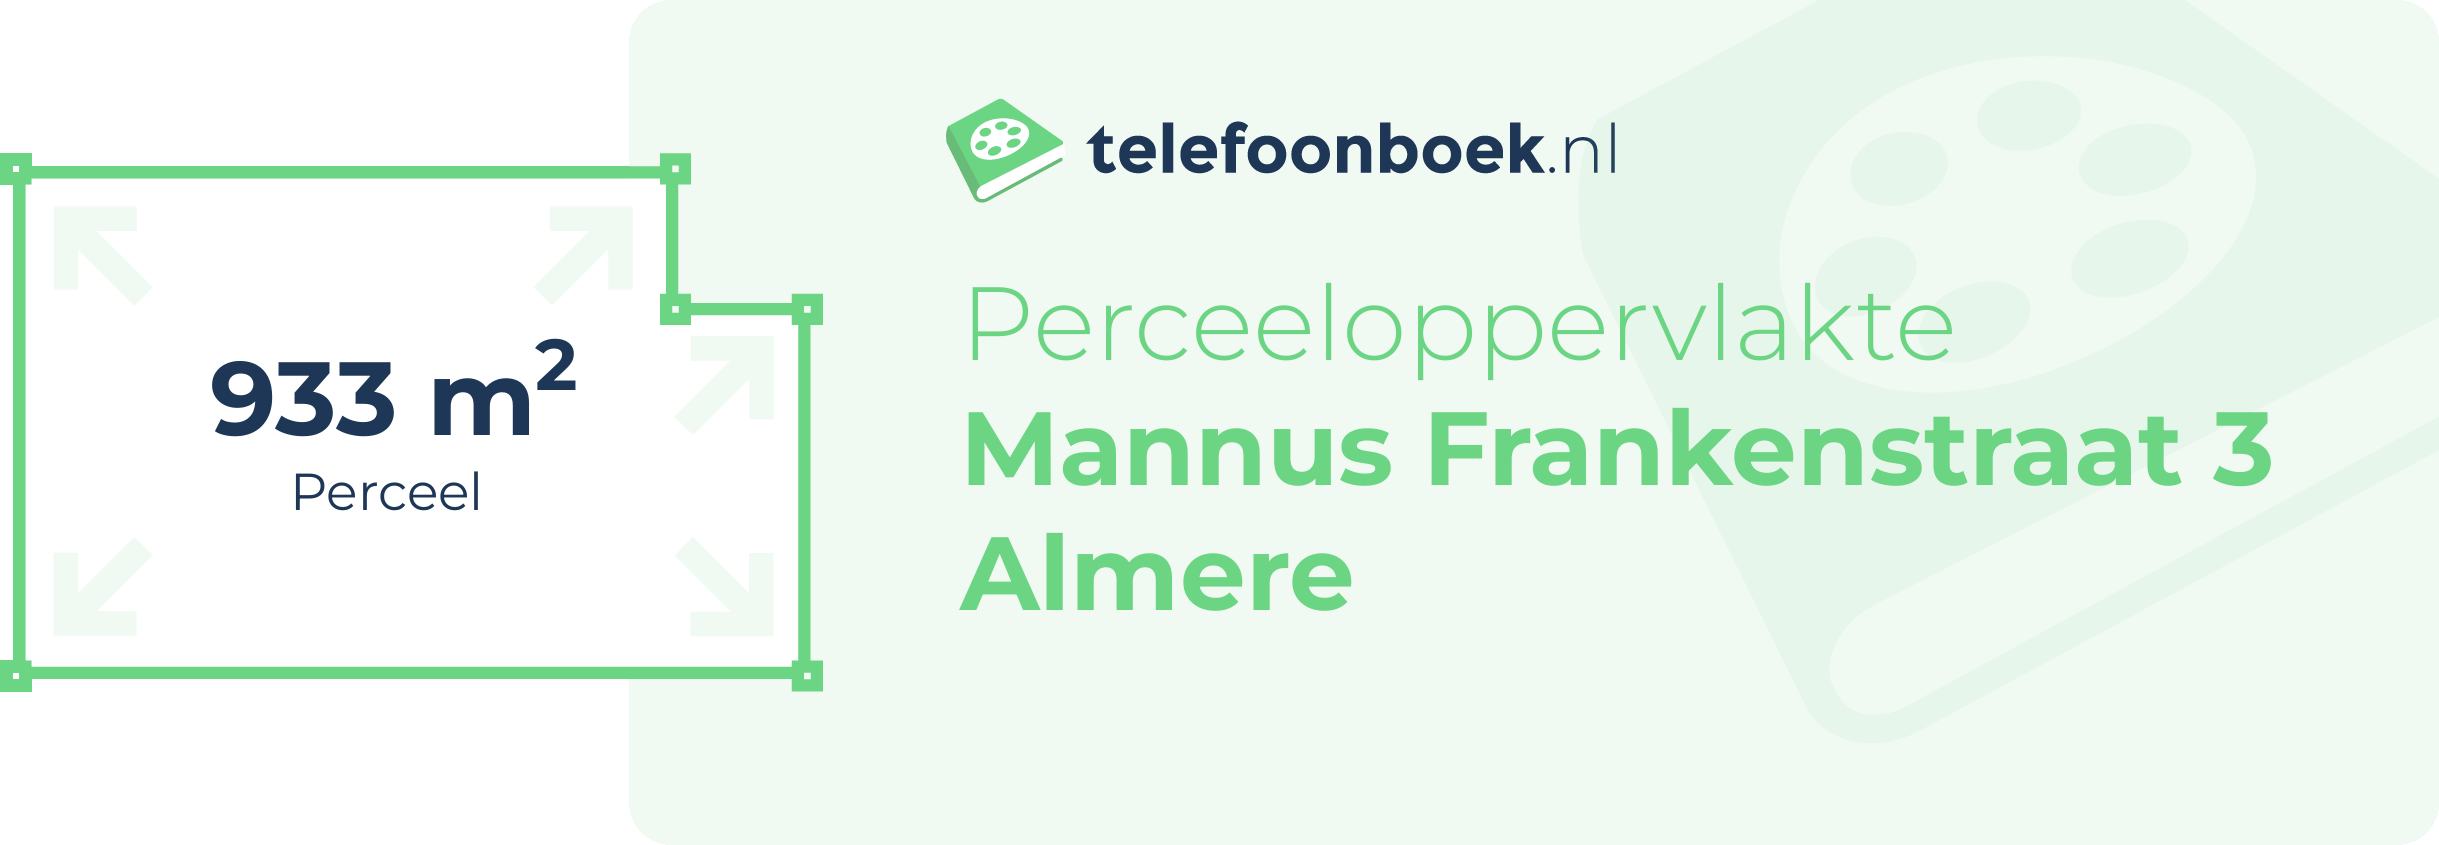 Perceeloppervlakte Mannus Frankenstraat 3 Almere